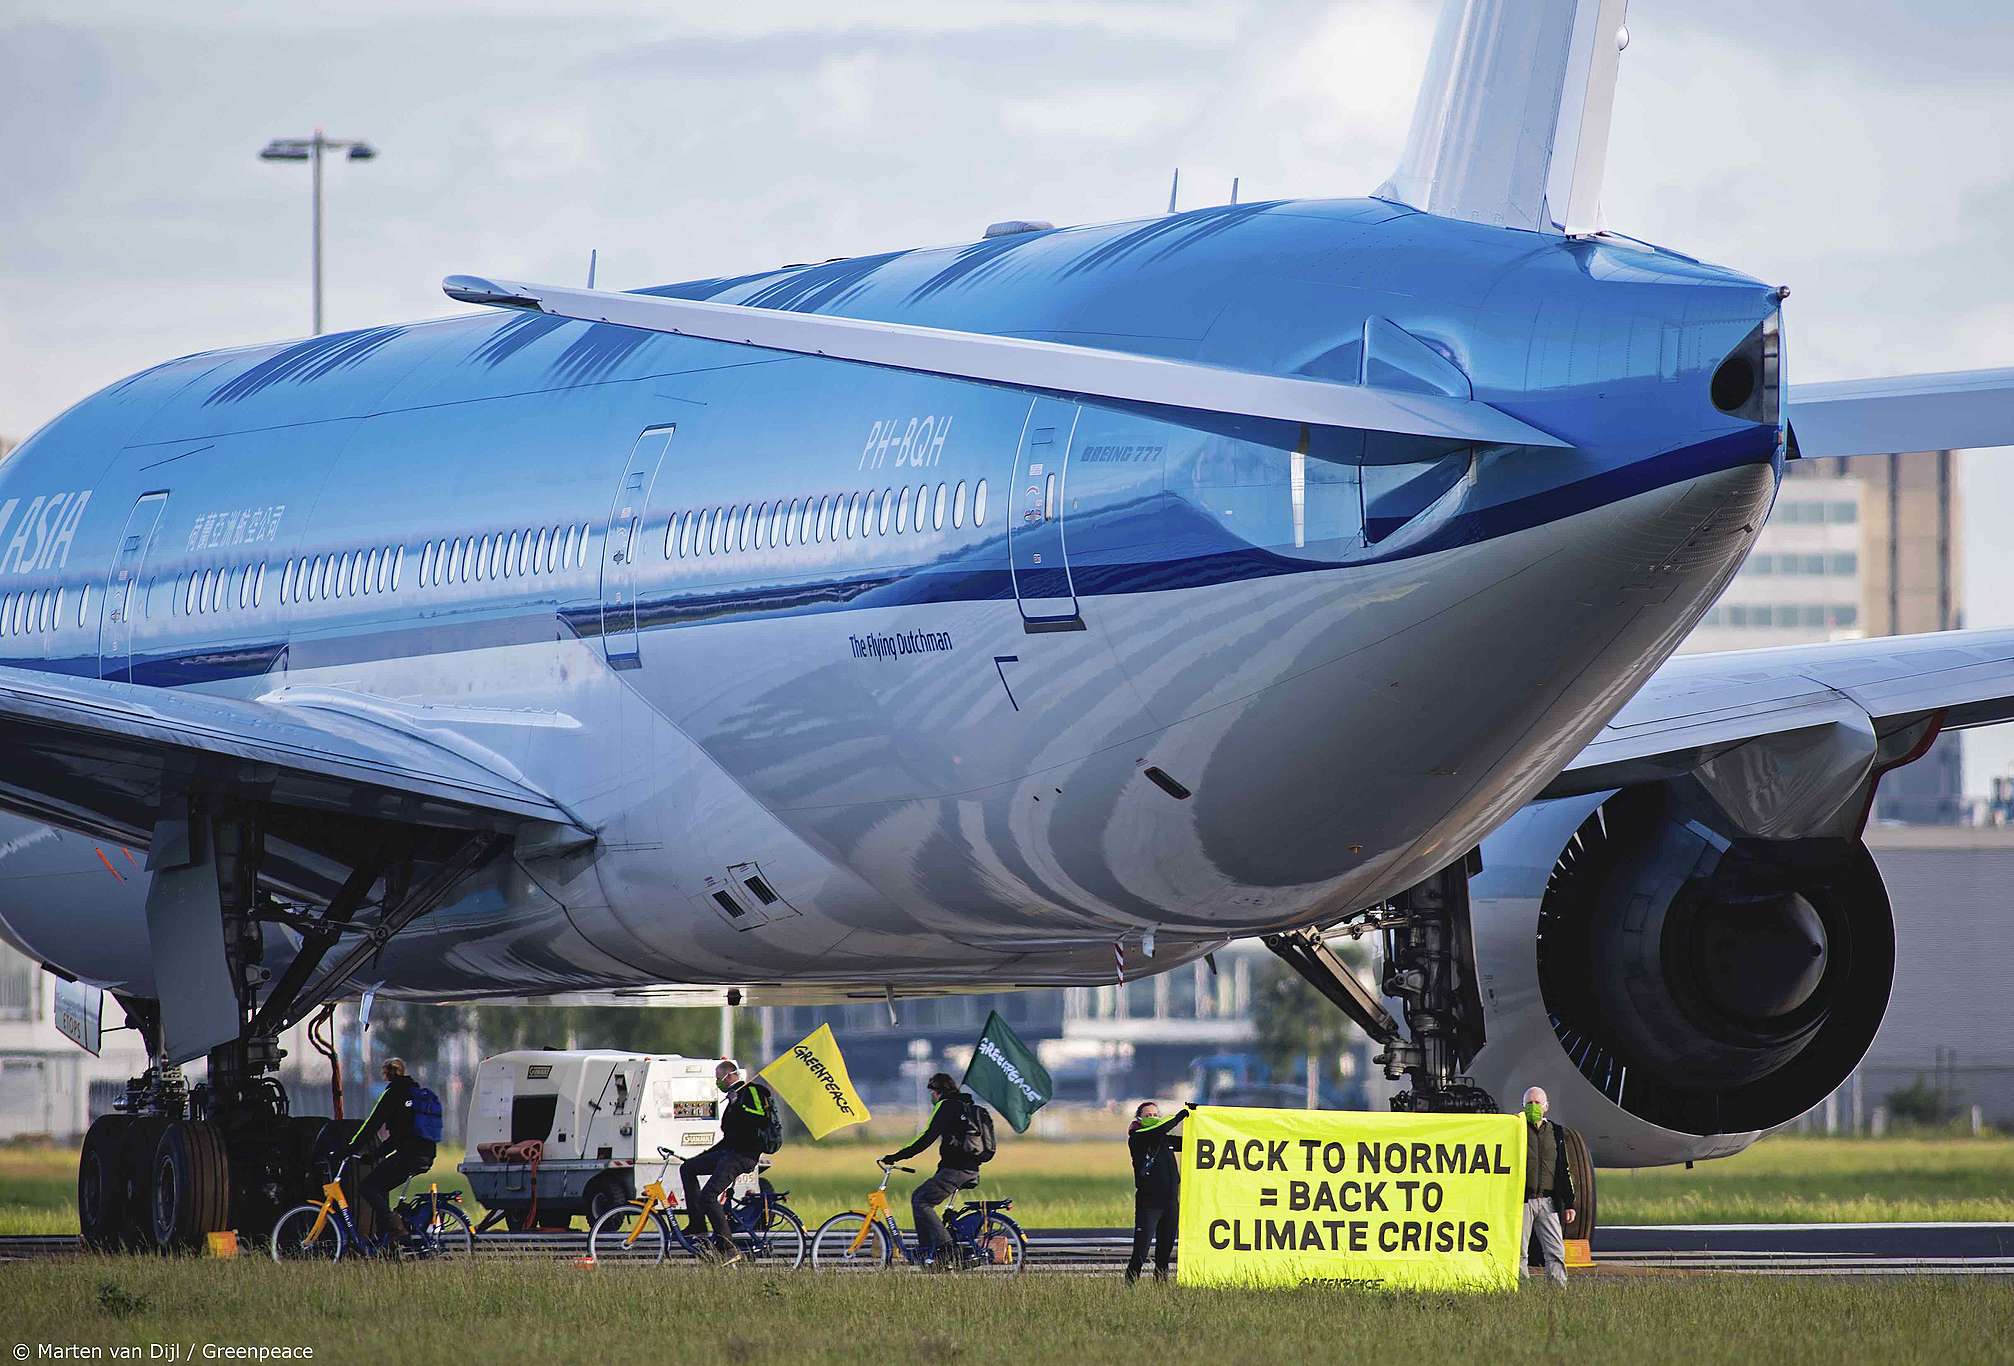 Retssag Mod Regeringen: Redningsplan For KLM Forværrer Klimakrisen